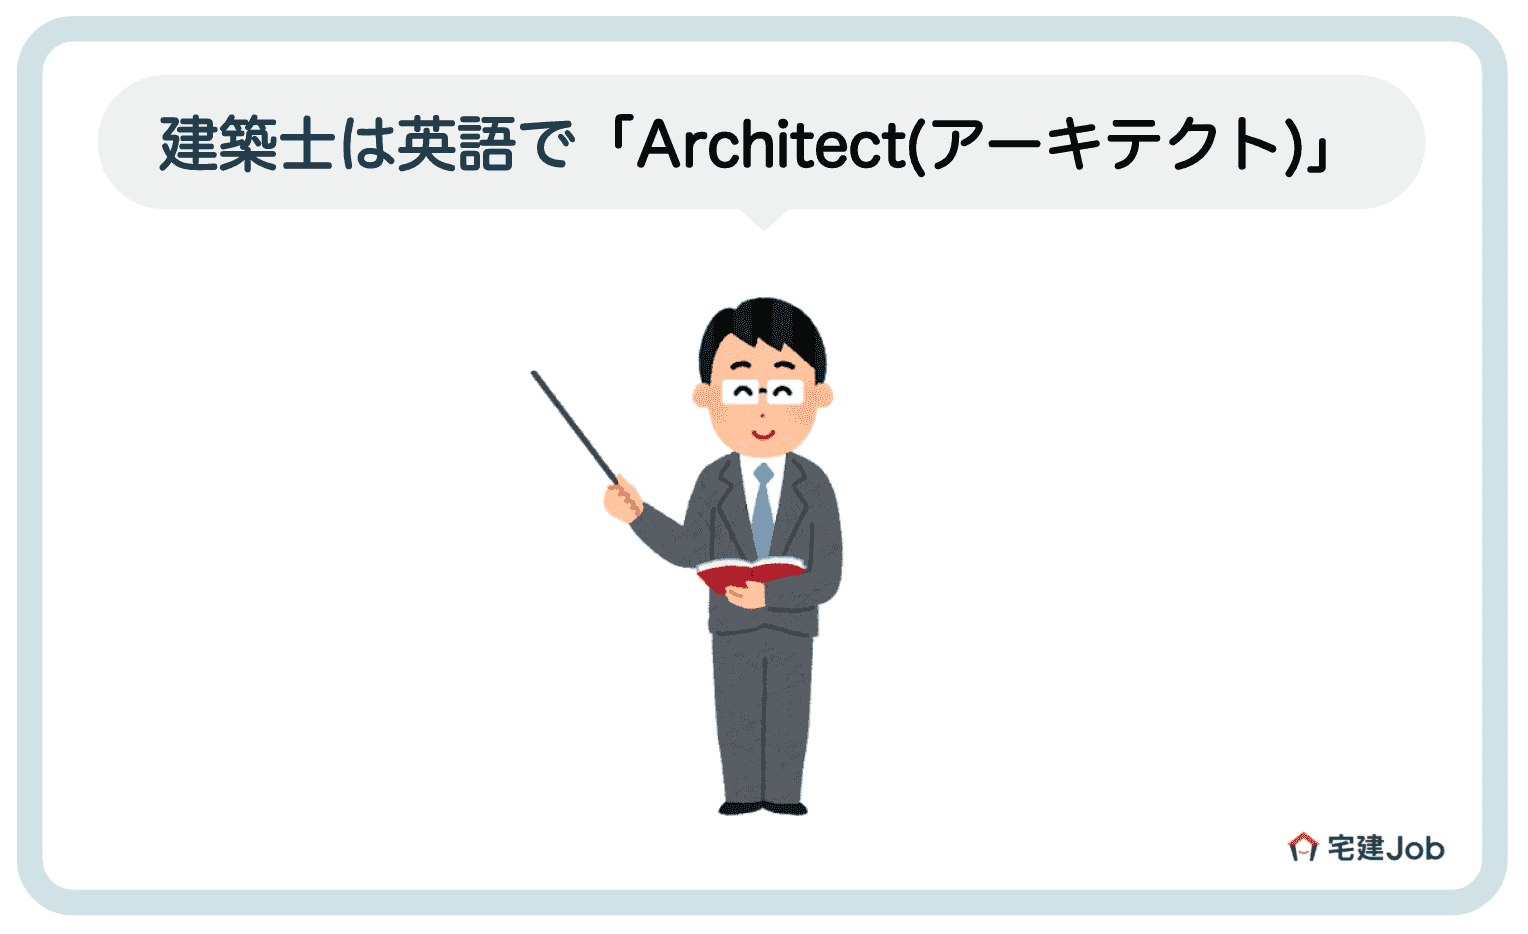 1.建築士は英語で「Architect(アーキテクト)」【発音】